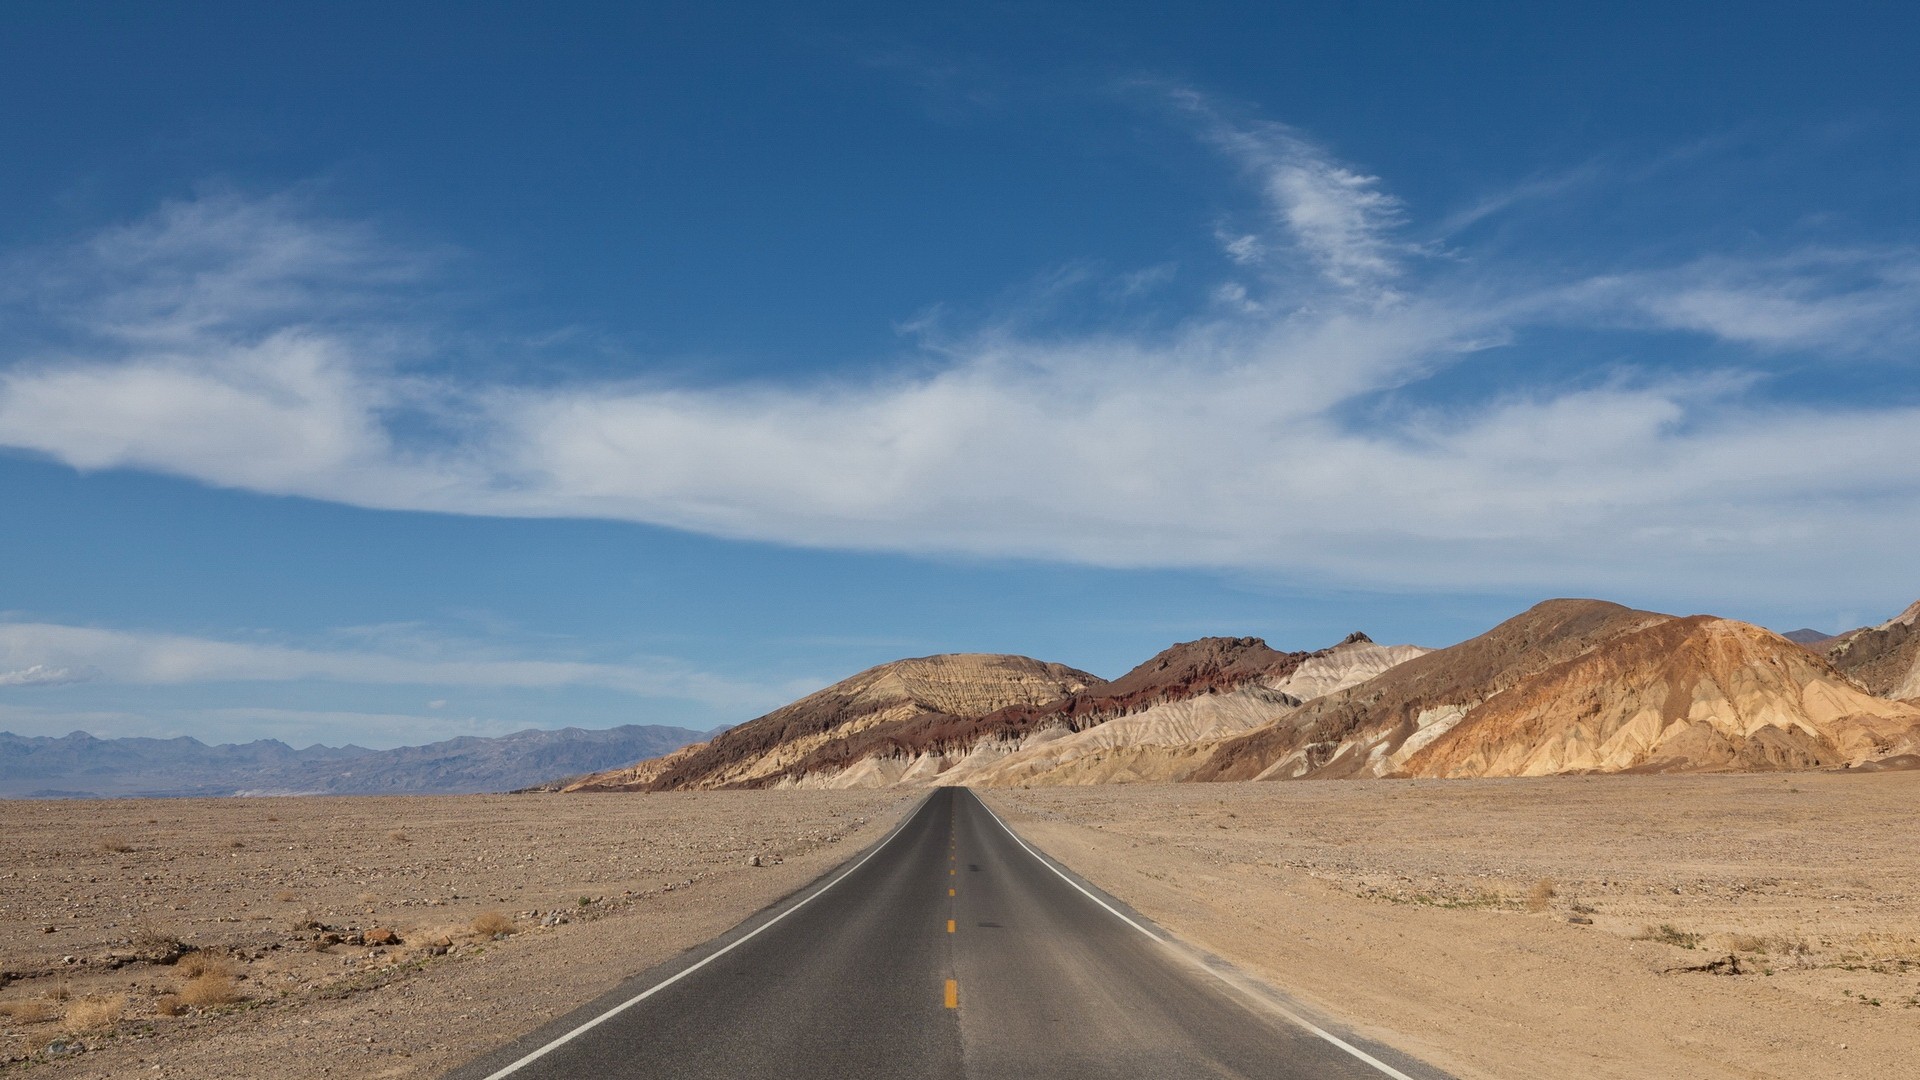 General 1920x1080 landscape nature desert mountains Death Valley road asphalt sky